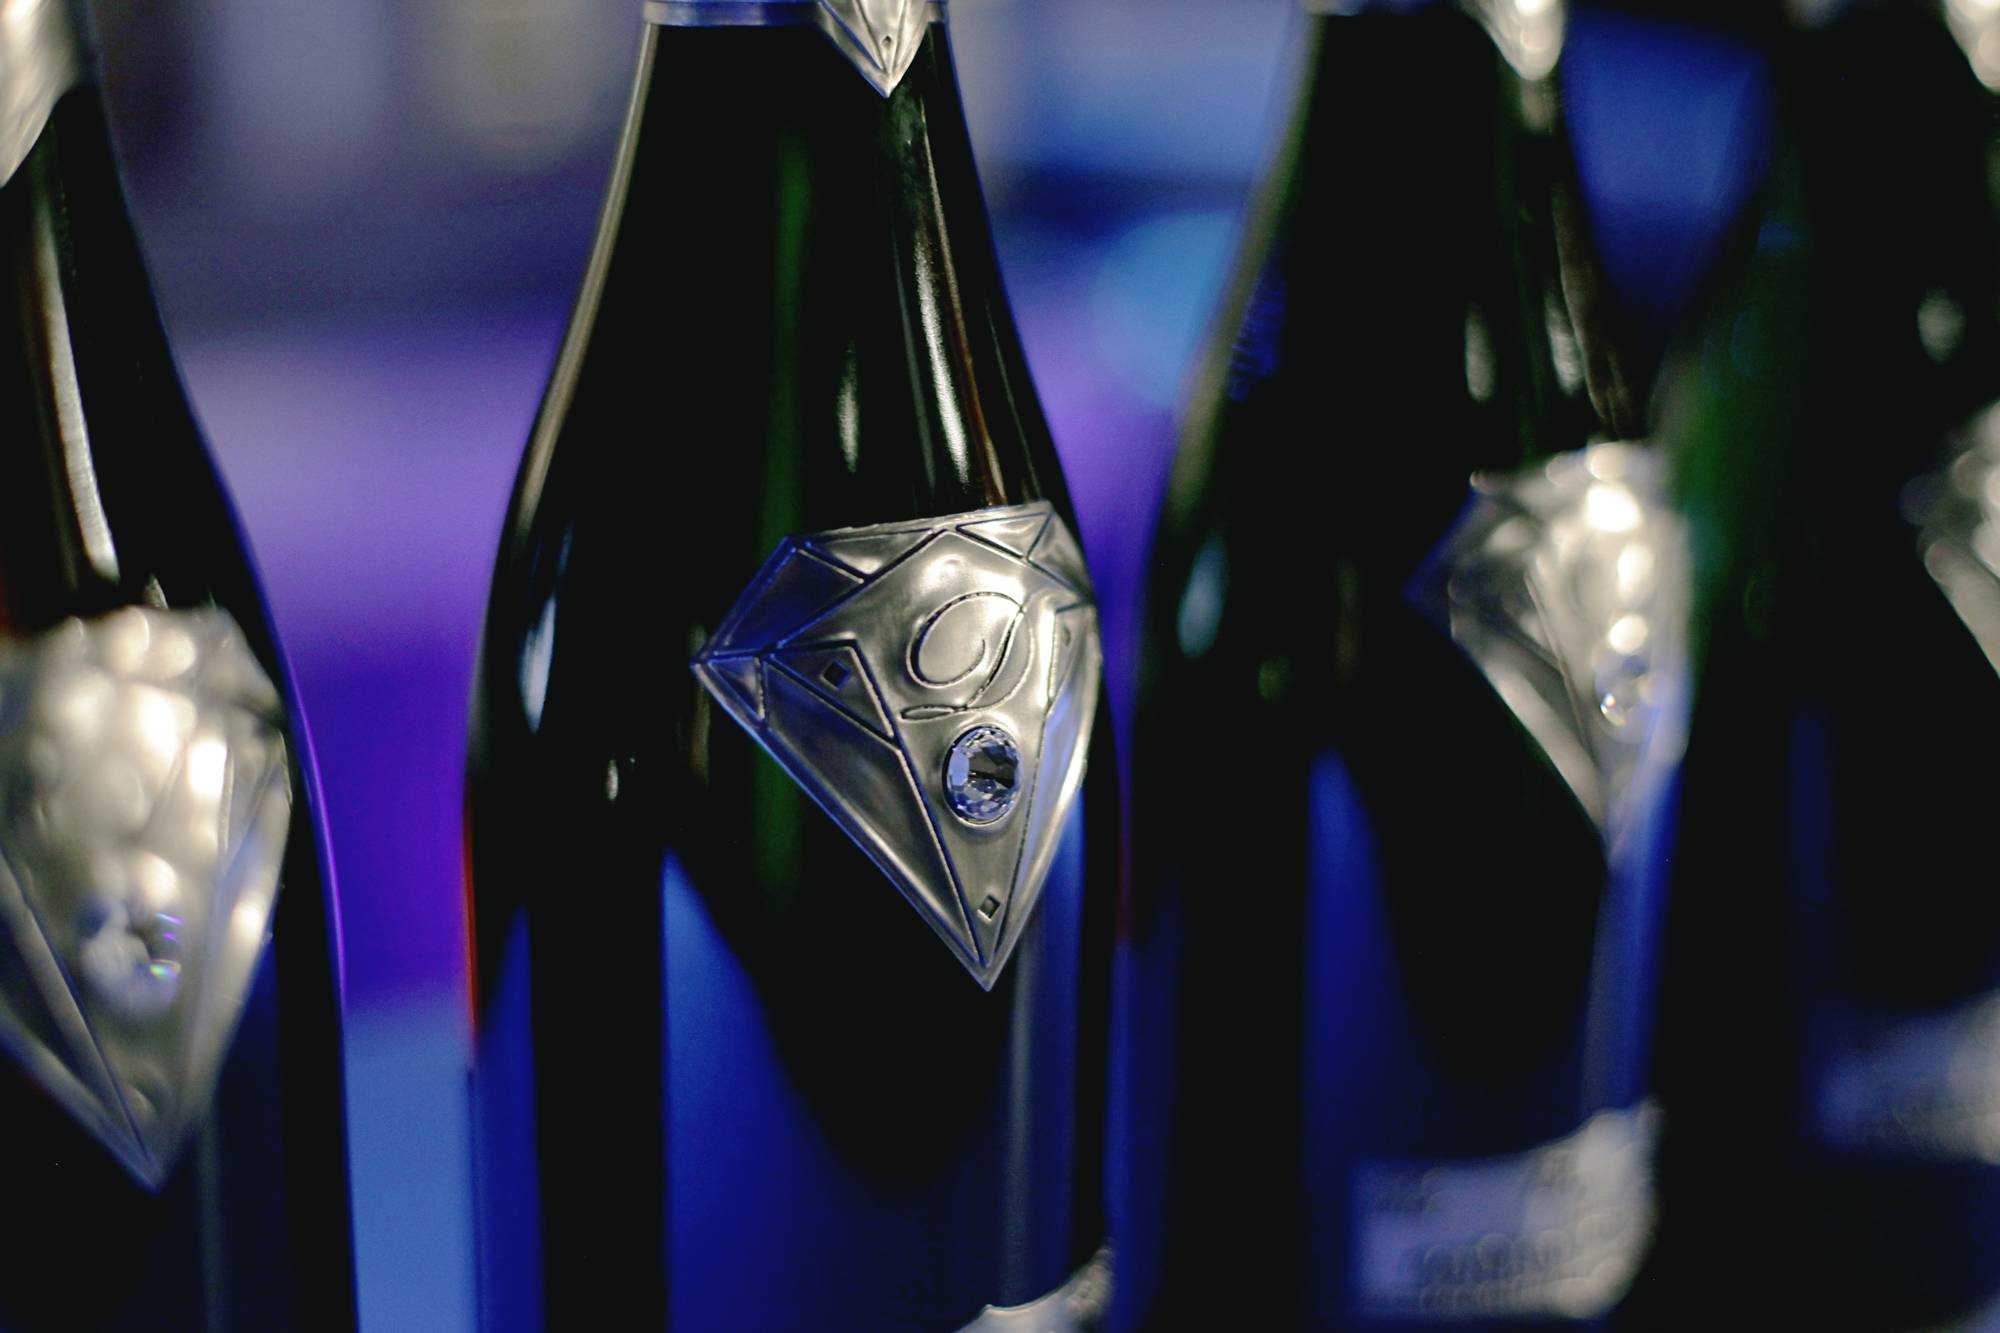 Десятка самых знаменитых брендов шампанского в мире - lawebar